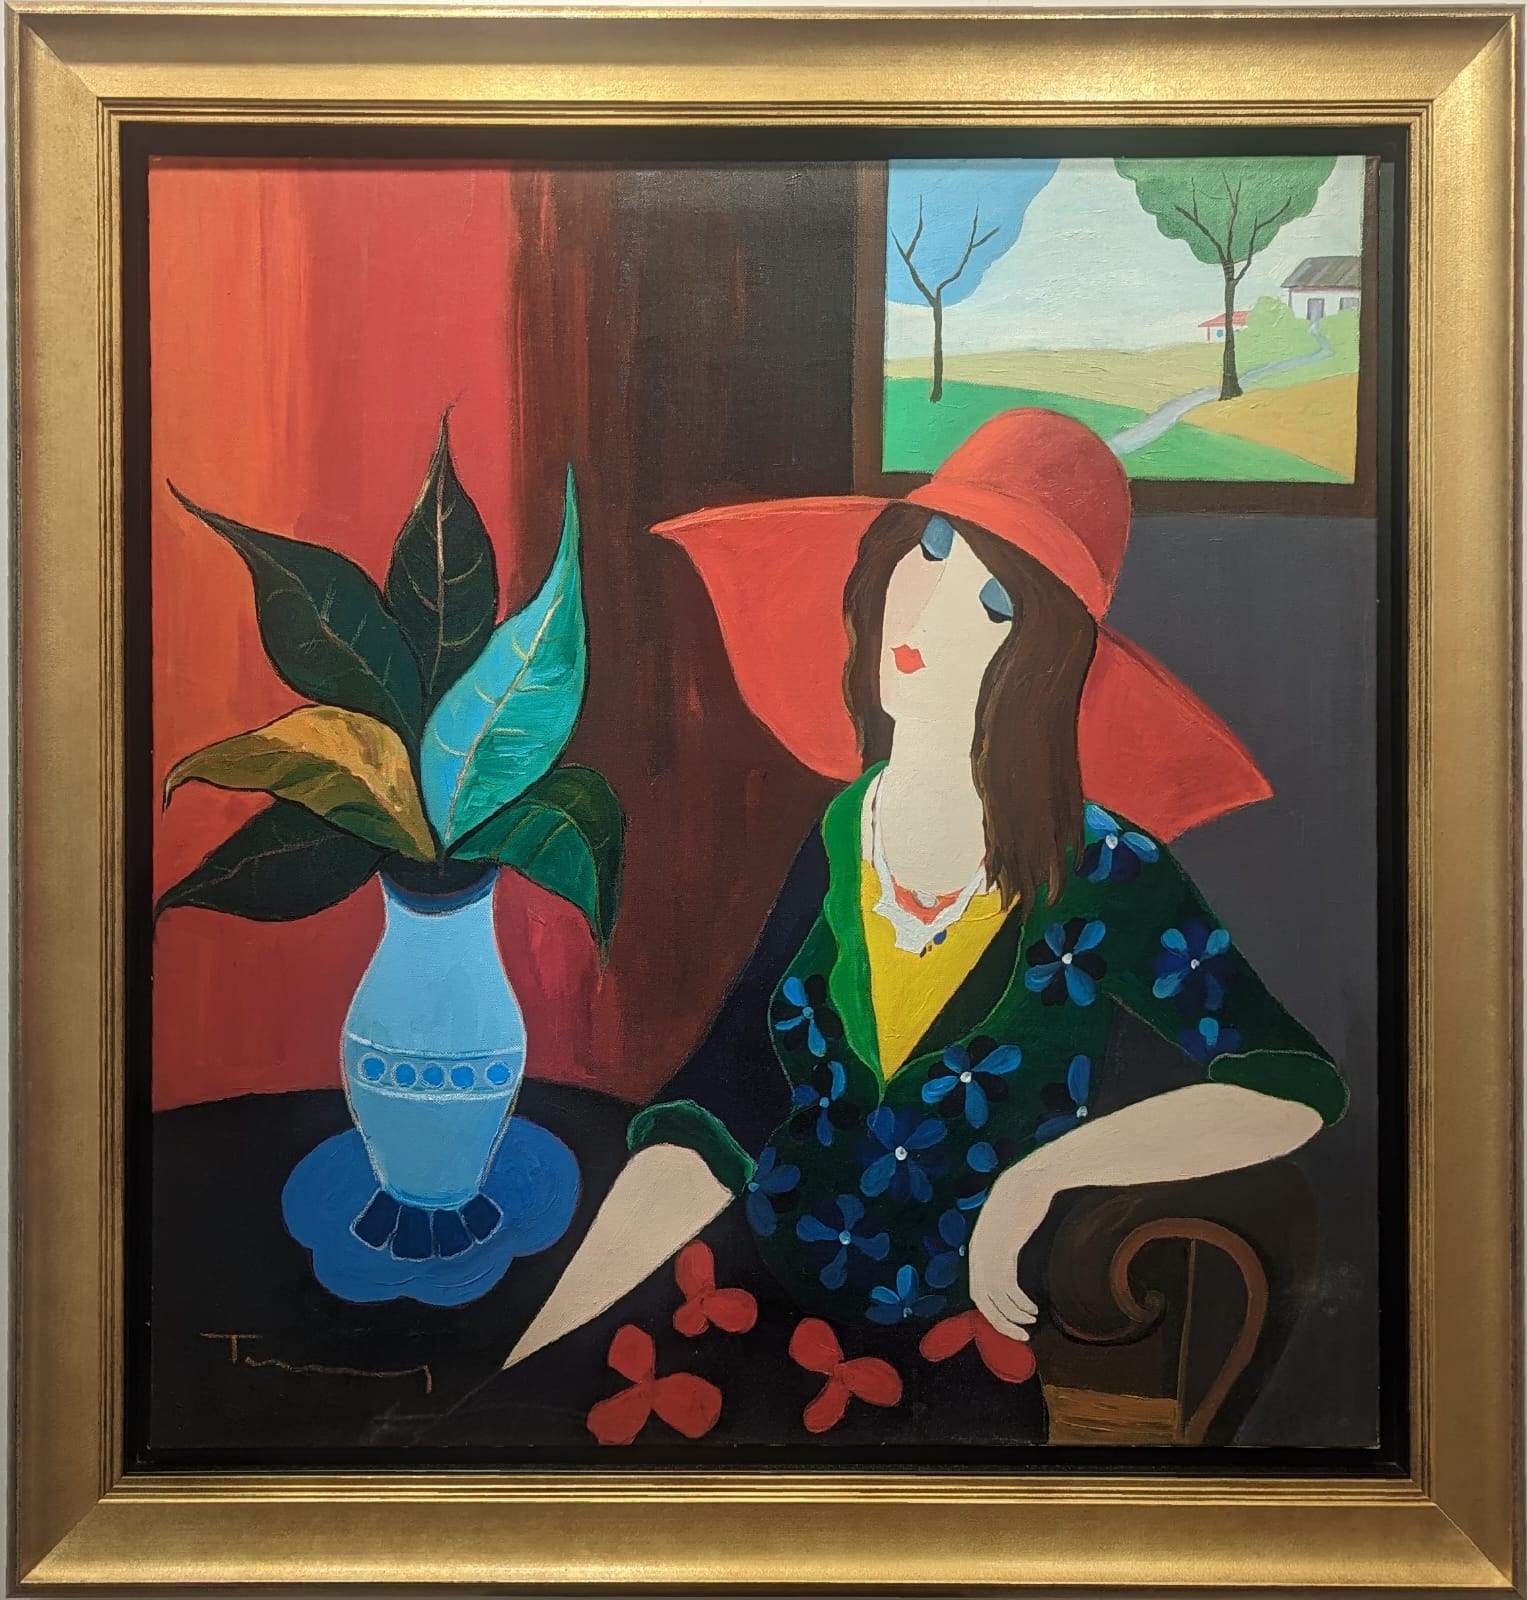 “Lady and a Vase” by Itzchak Tarkay